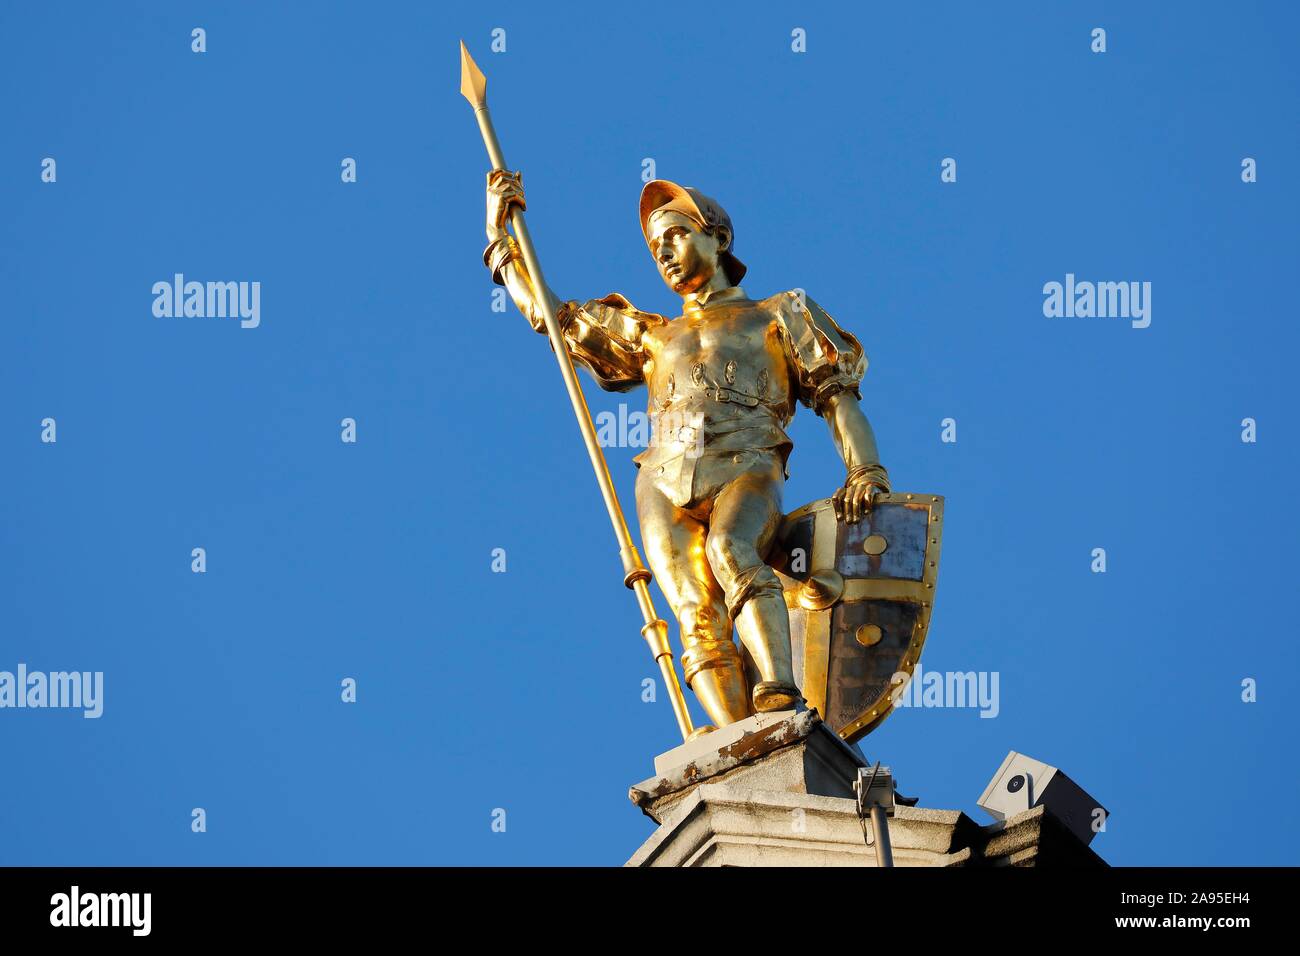 Golden Abbildung mit Lanze am Giebel eines Guild House, Grote Markt, Altstadt von Antwerpen, Flandern, Belgien Stockfoto